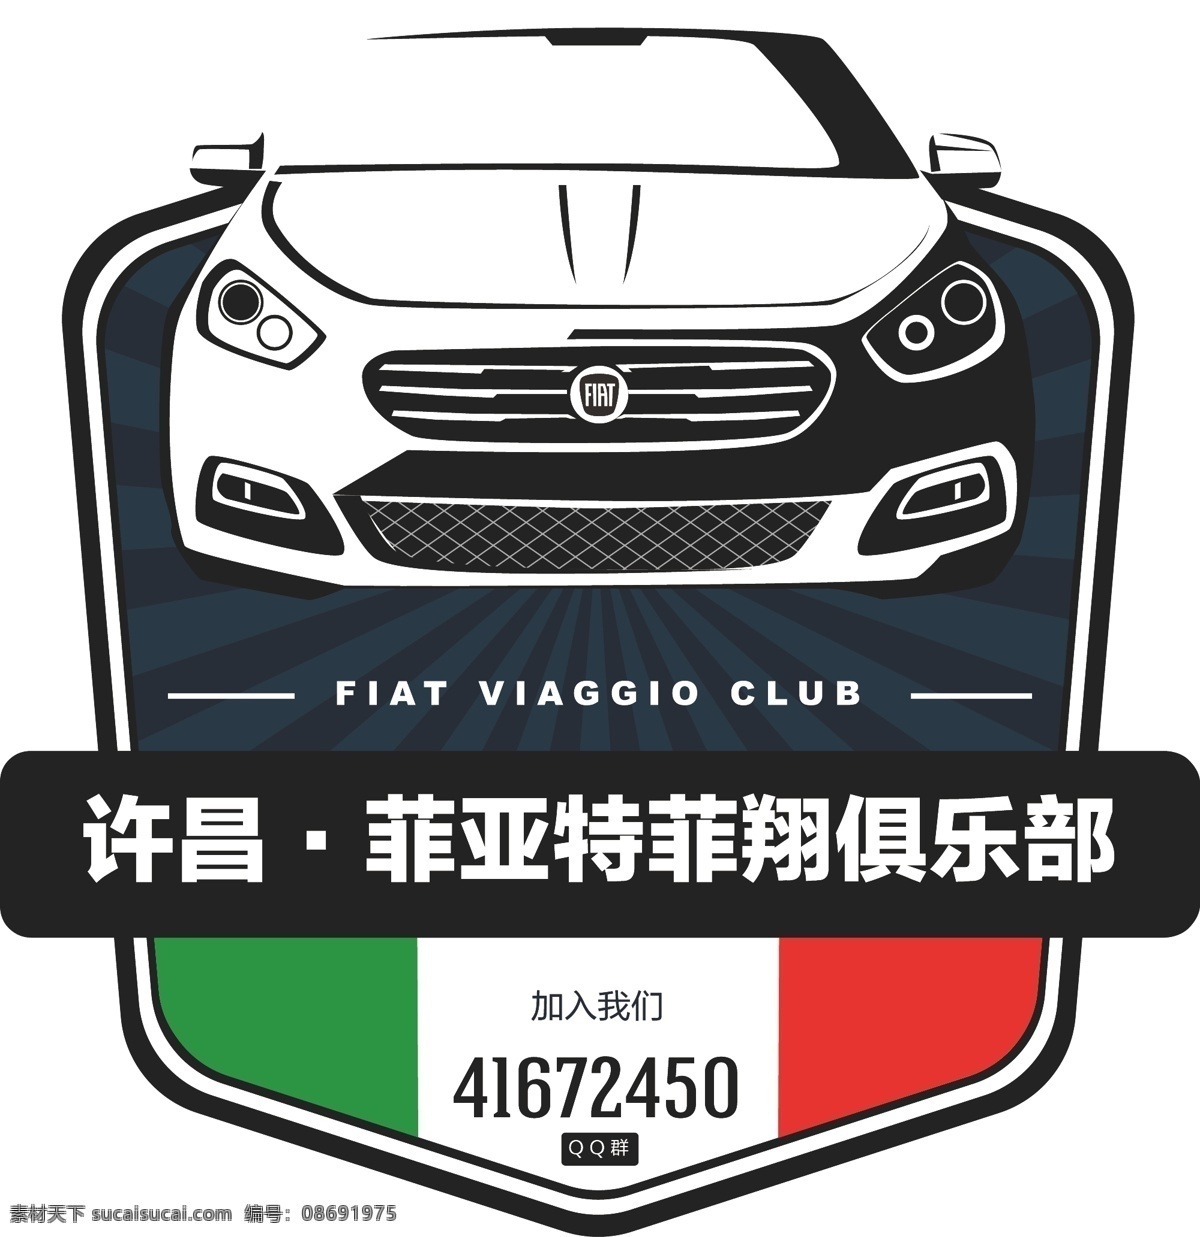 菲亚特 logo 标志 不干胶 车贴 车尾贴 汽车俱乐部 广汽菲亚特 原创设计 其他原创设计